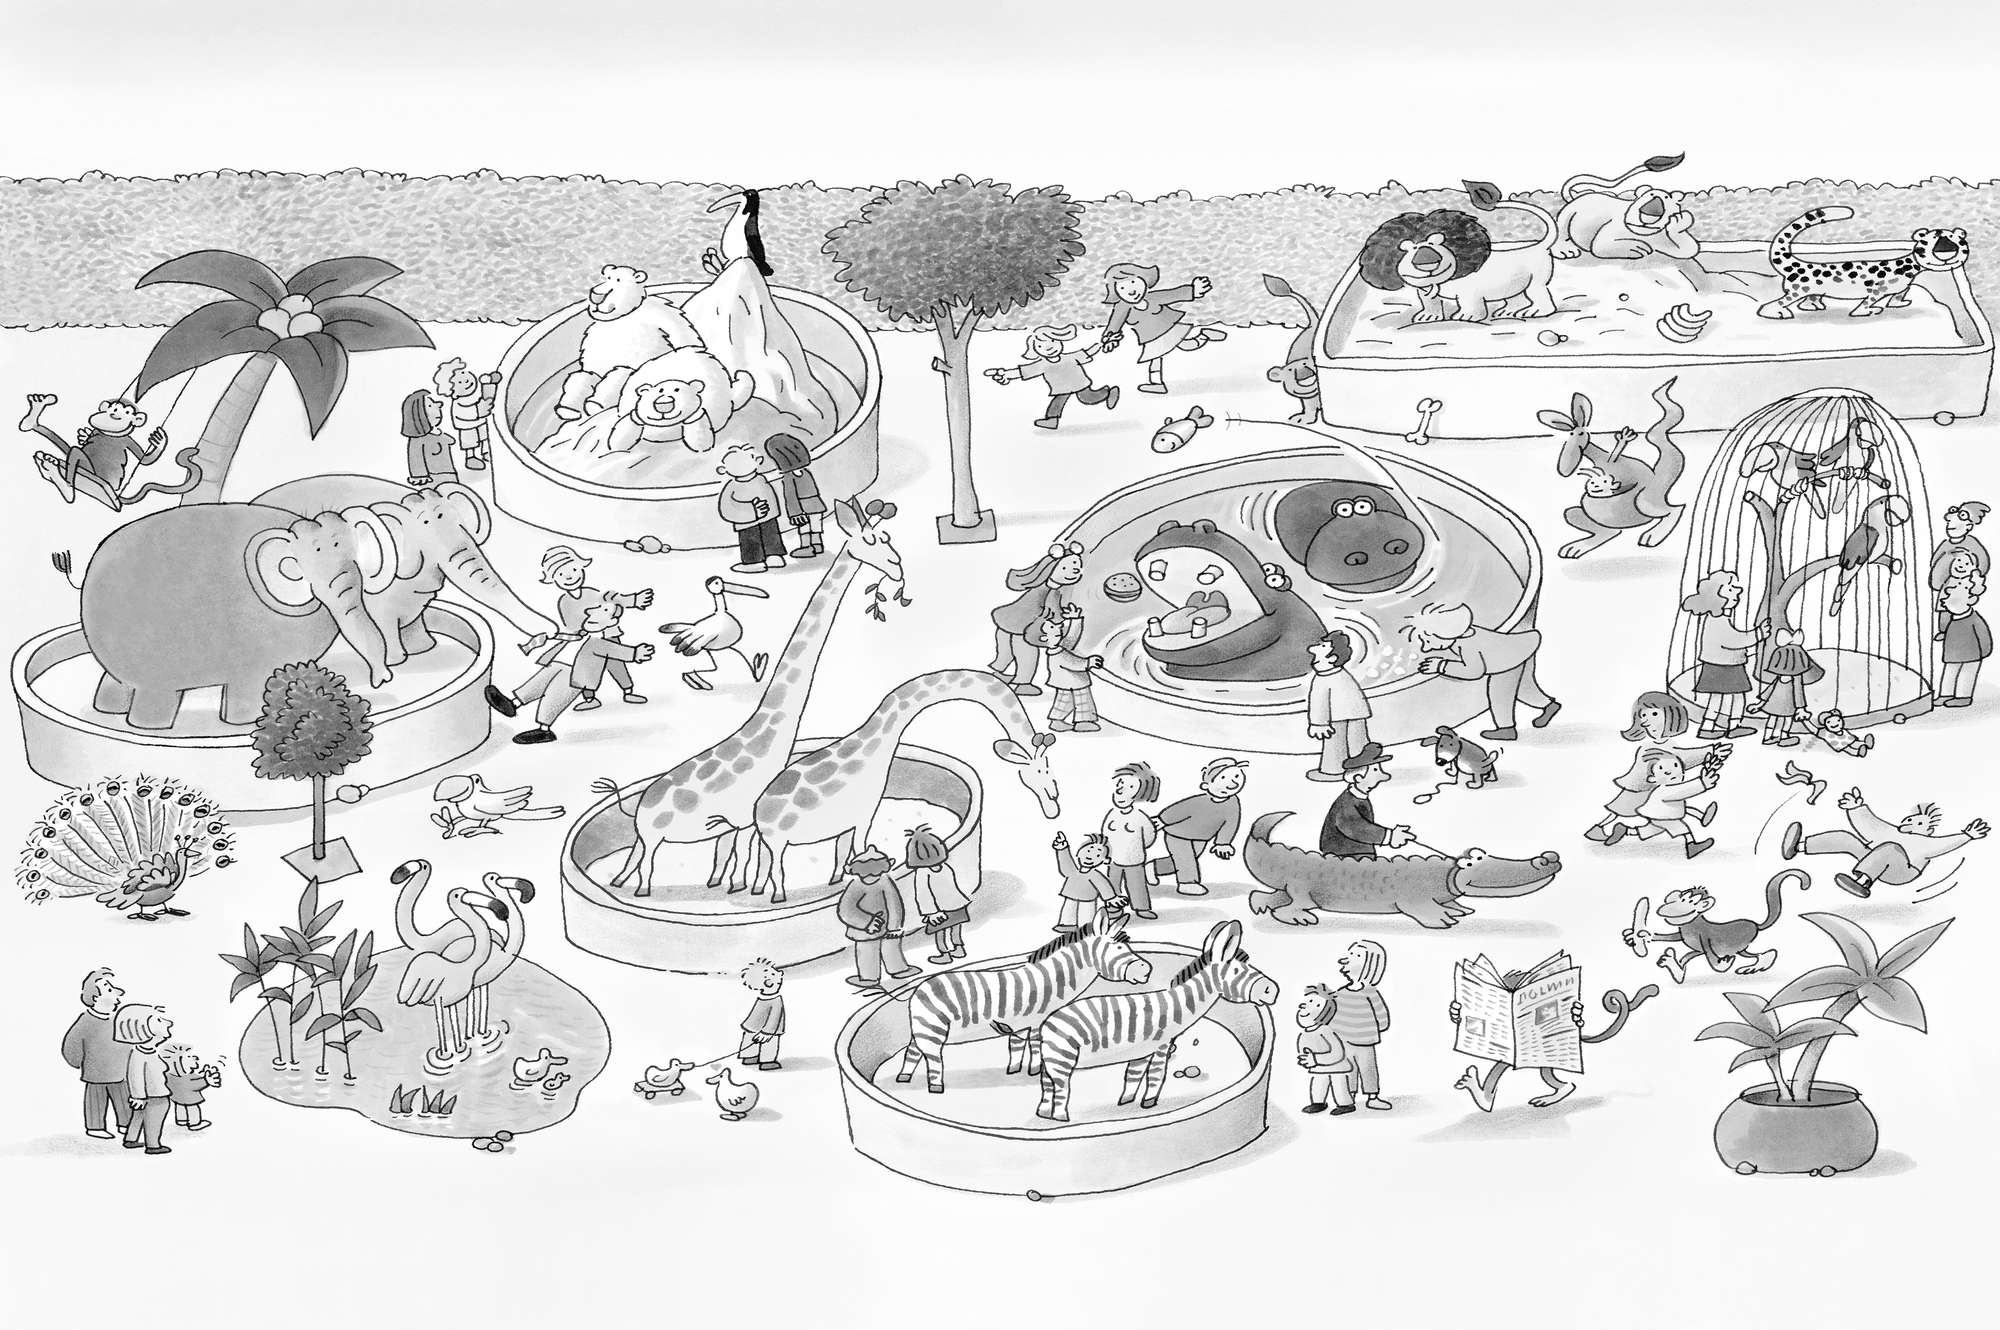             Kinder Fototapete Zoo Zeichnung in Schwarz Weiß auf Premium Glattvlies
        